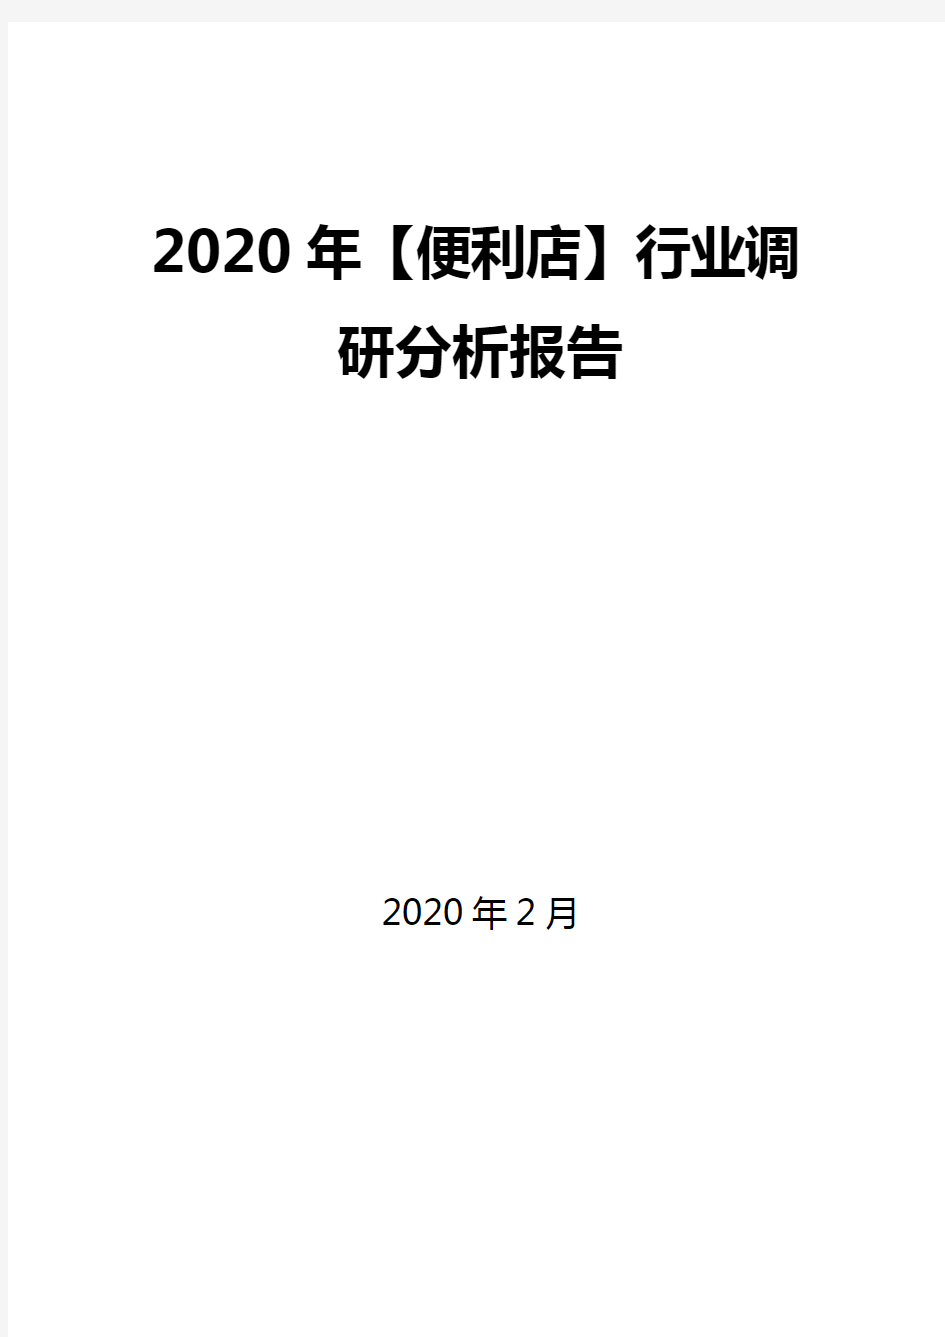 2020年【便利店】行业调研分析报告